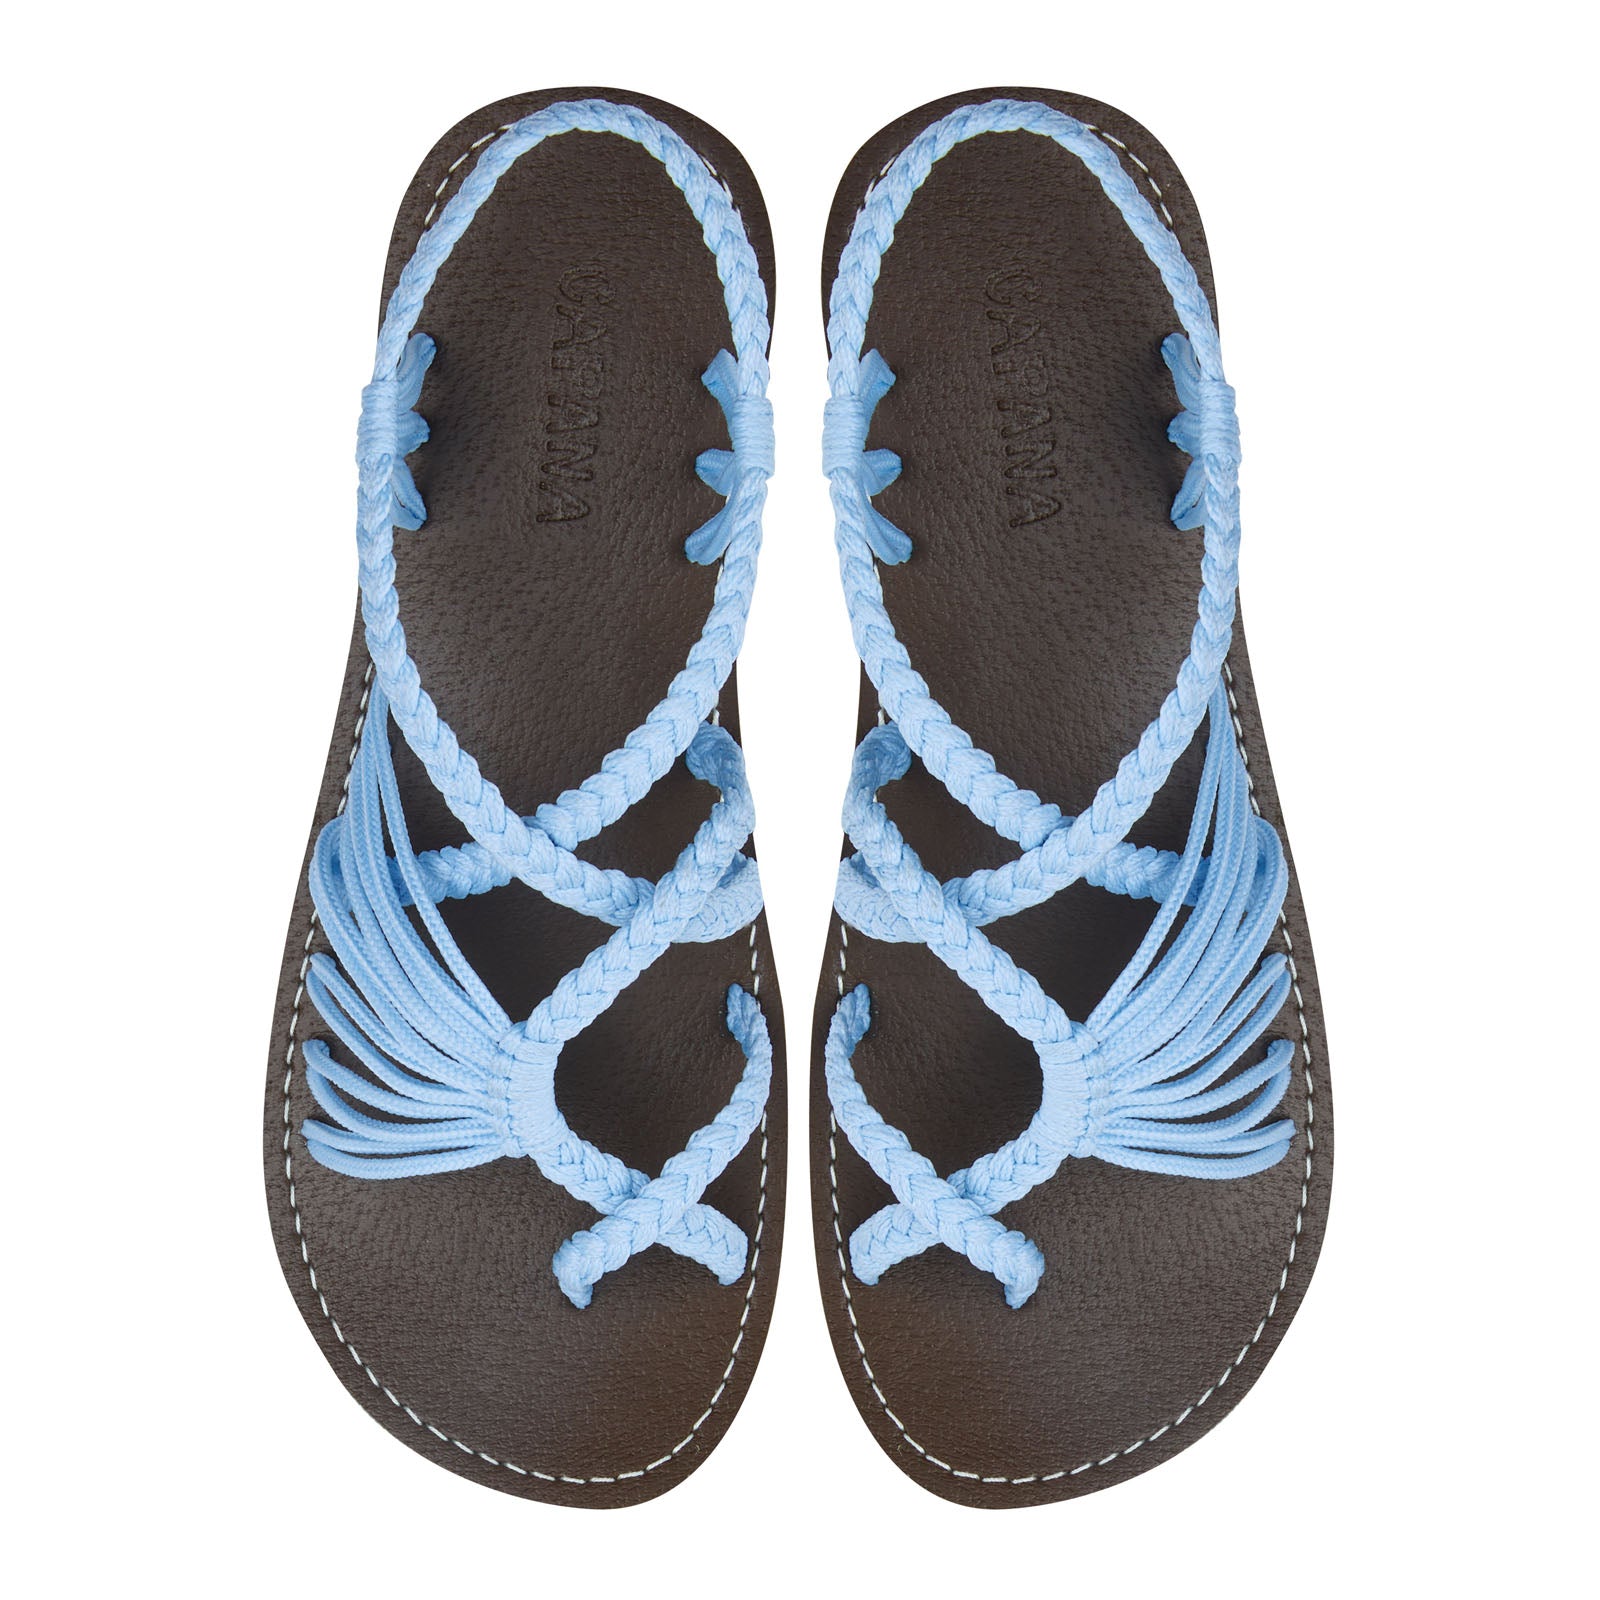 Handwoven Women's Flat Sandals Blue sky - Strappy Sandals for Women, Boho Sandals, Walking Sandals Women, Rope Sandals, Beach Sandals for Women, Water Sandals, Braided Flat Sandals for Women